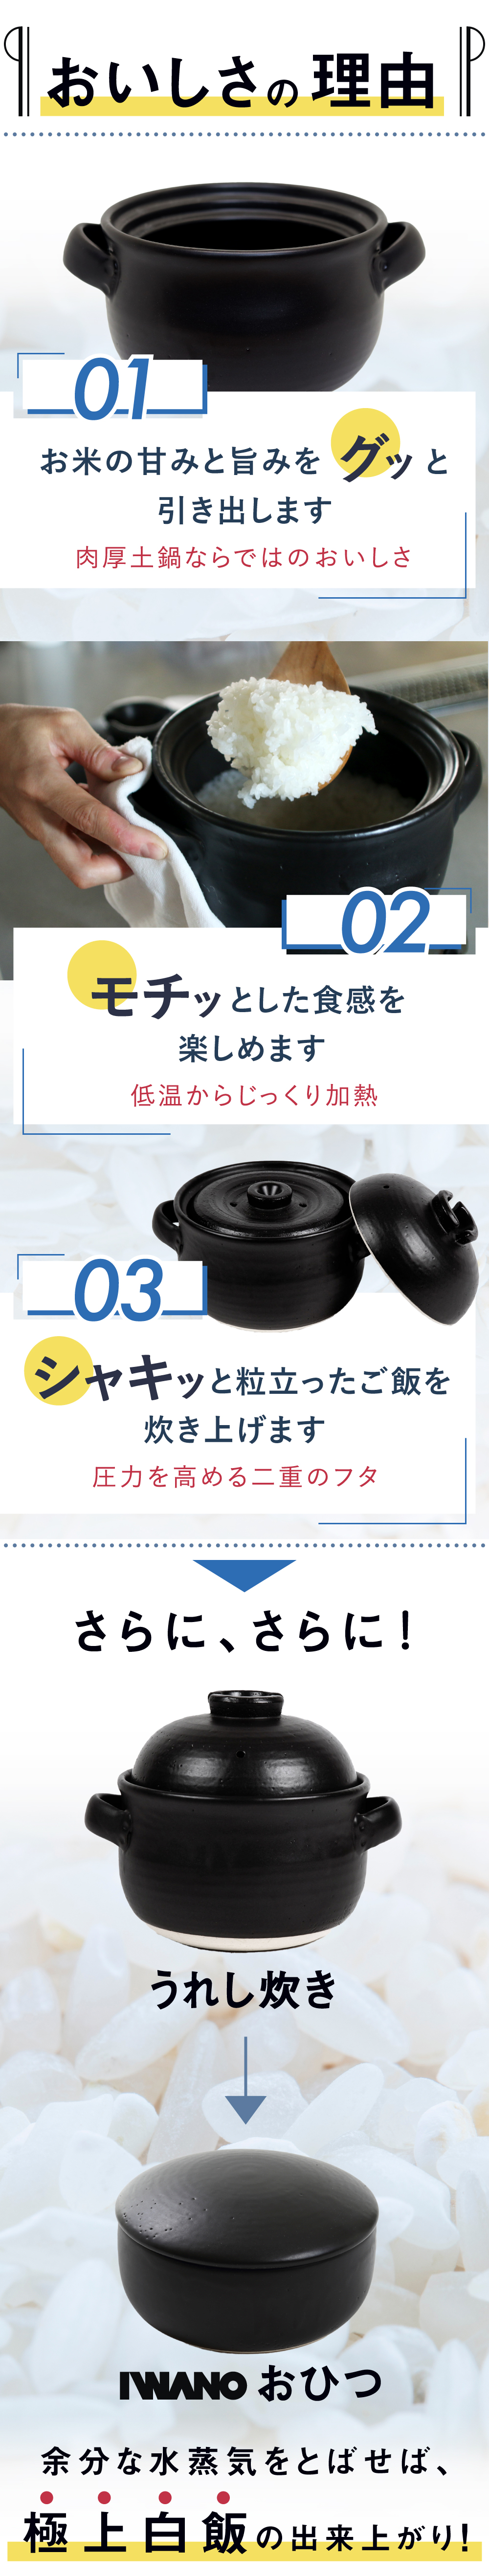 うれし炊き 日本製 ご飯釜 ”おいしい”の基準が変わる 絶品ご飯をご家庭